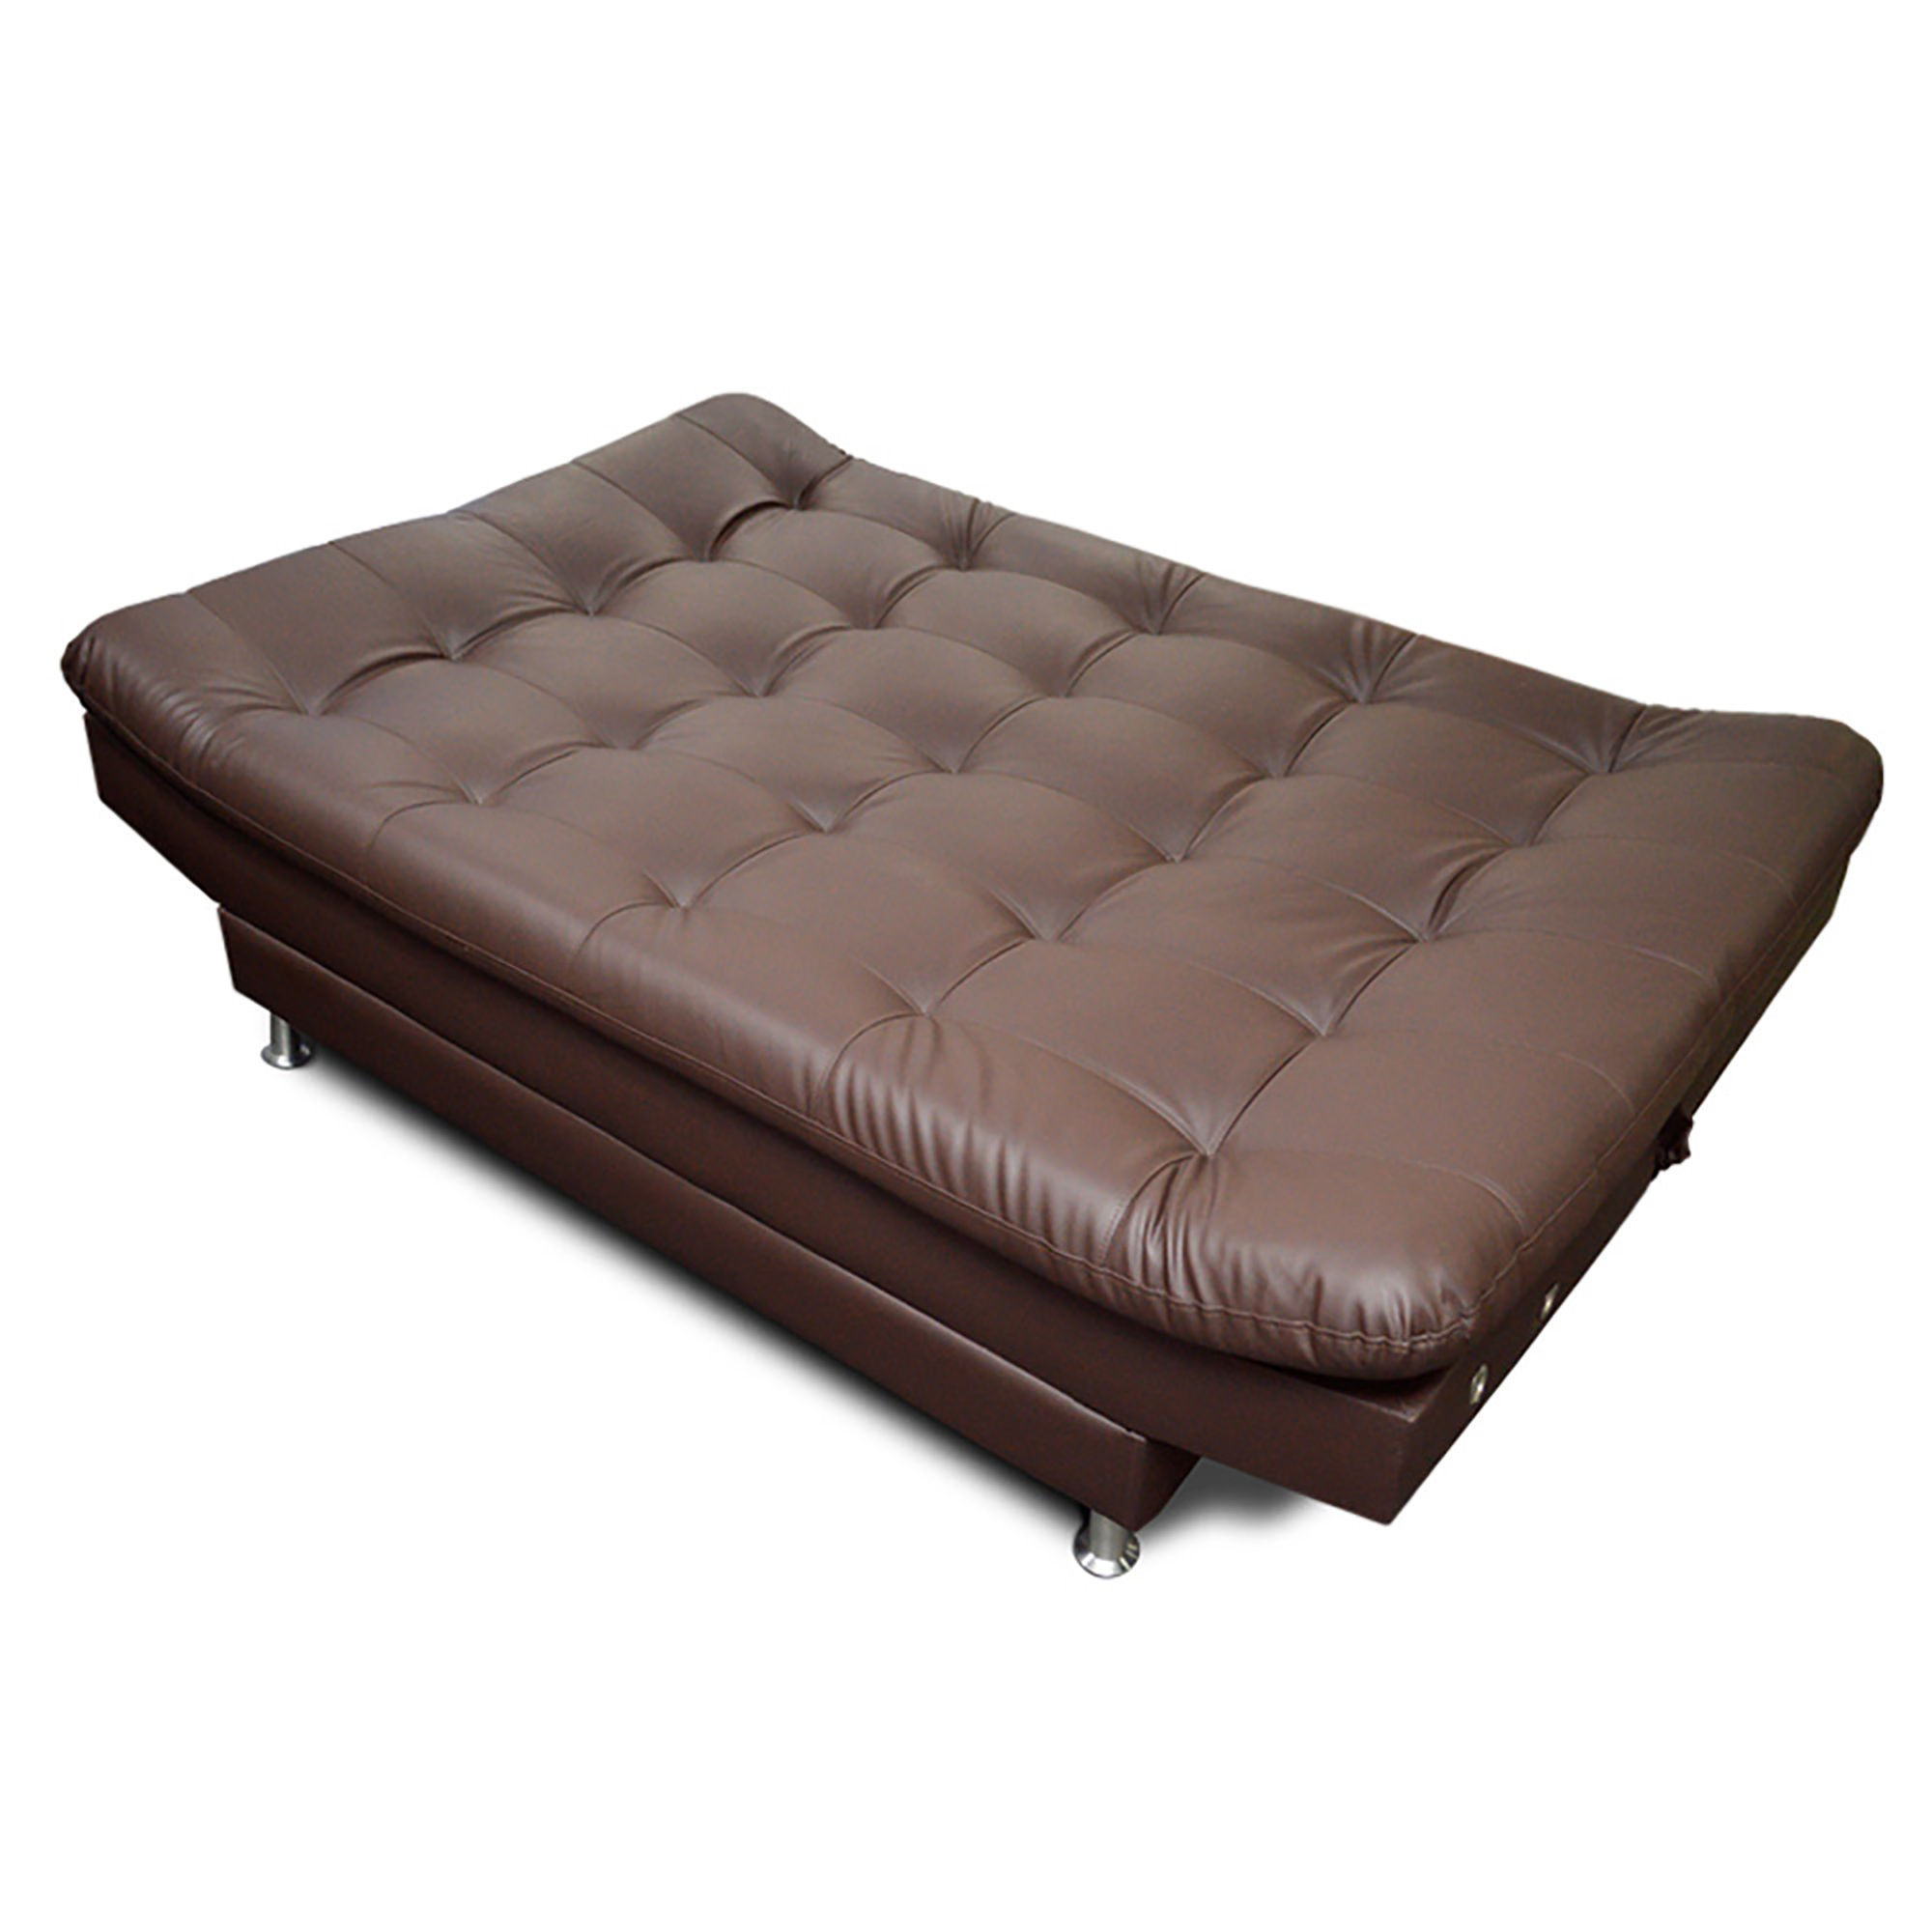 Sofa Cama Imperial Color Marron